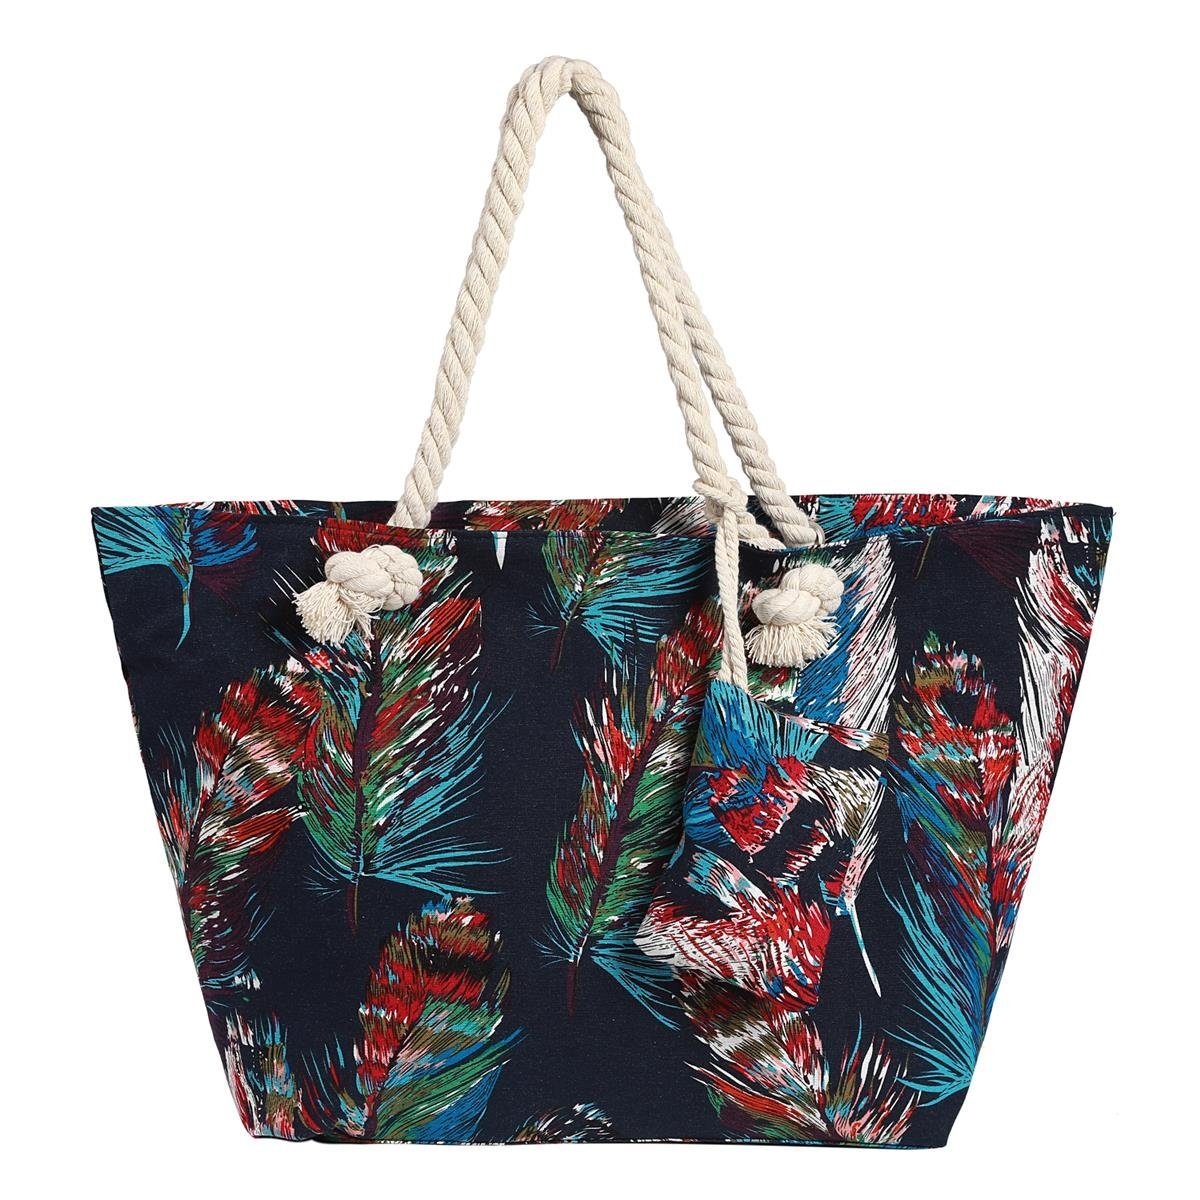 DonDon Strandtasche Shopper wasserabweisende Tasche (2-tlg), Große Strandtasche, mit Reißverschluss, inkl. kleinem Beutel federn-schwarz-bunt